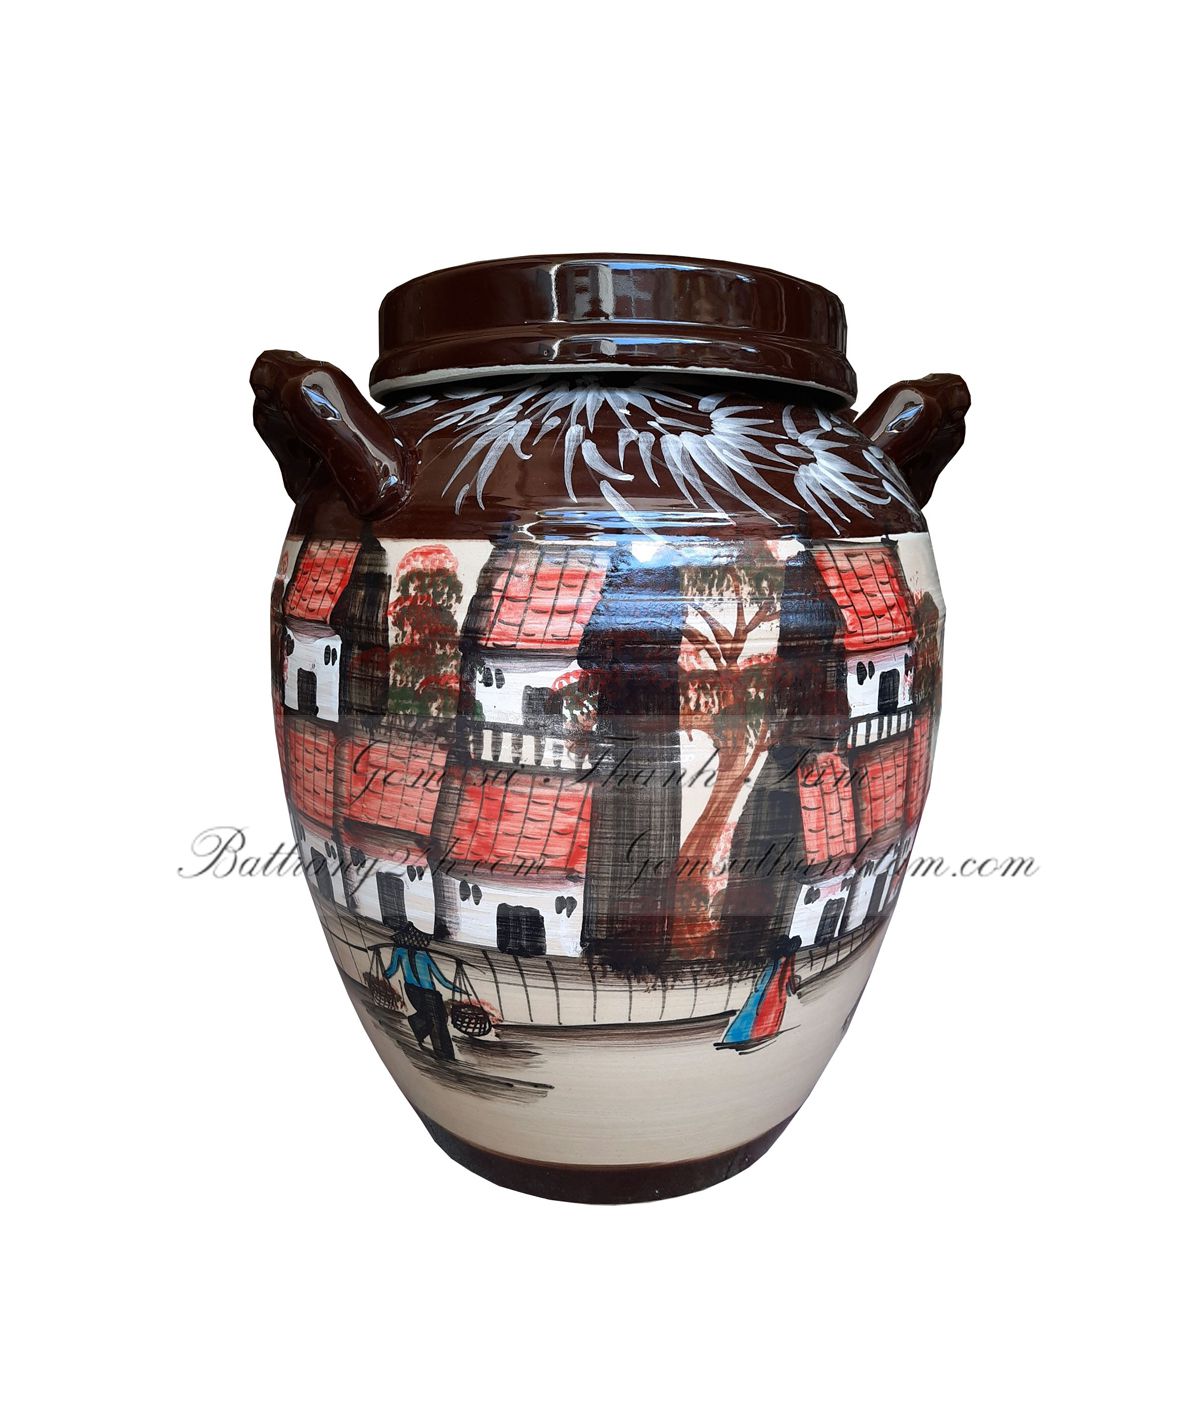 Xưởng sản xuất vò rượu gốm Bát Tràng vẽ hoa văn đồng quê trang trí đẹp mắt có gắn vòi 200L chất lượng tốt, giá rẻ nhất định nên mua